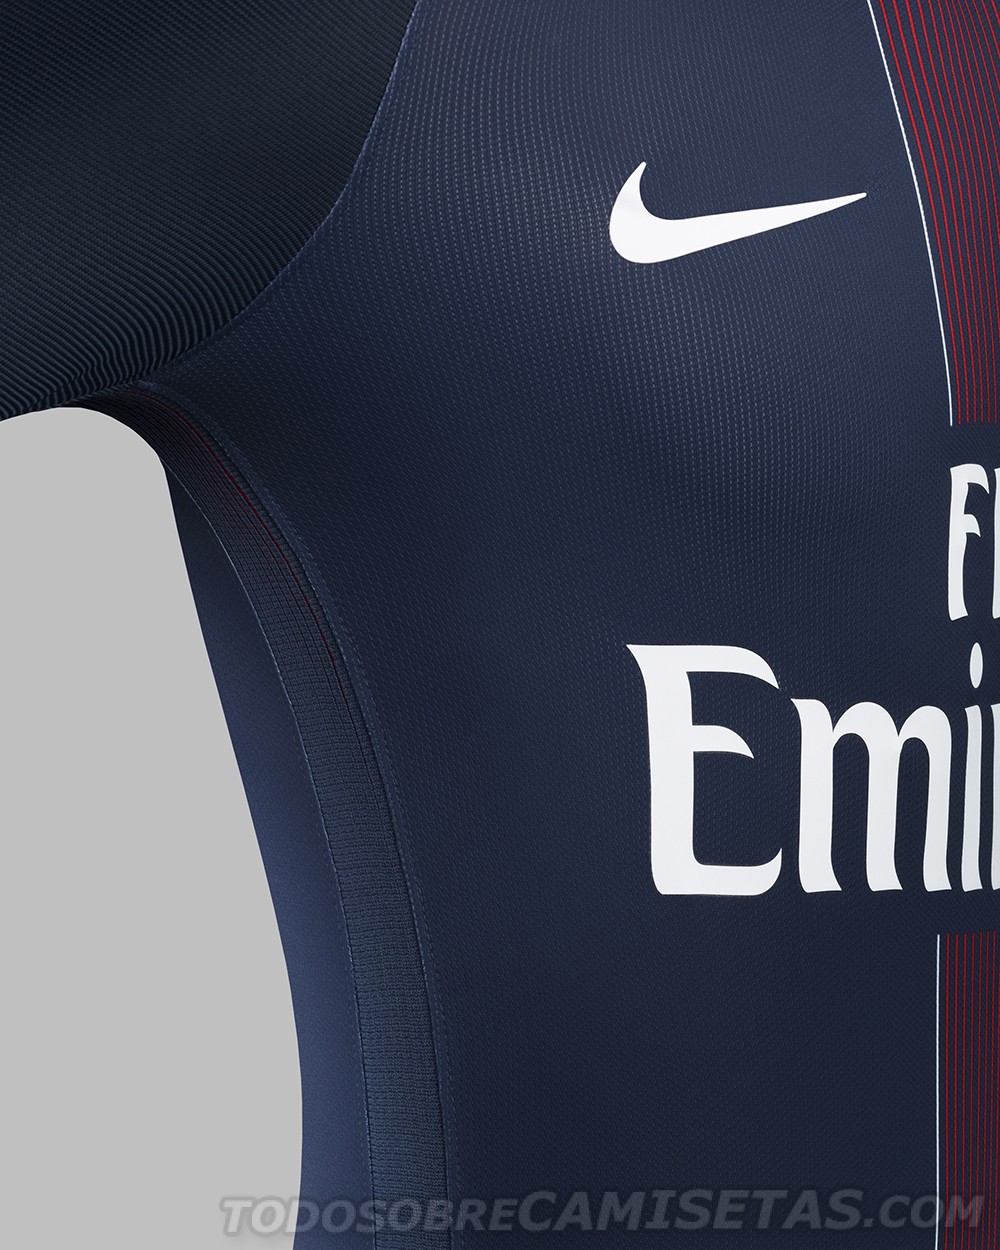 Paris Saint-Germain 2016-17 Nike Home Kit